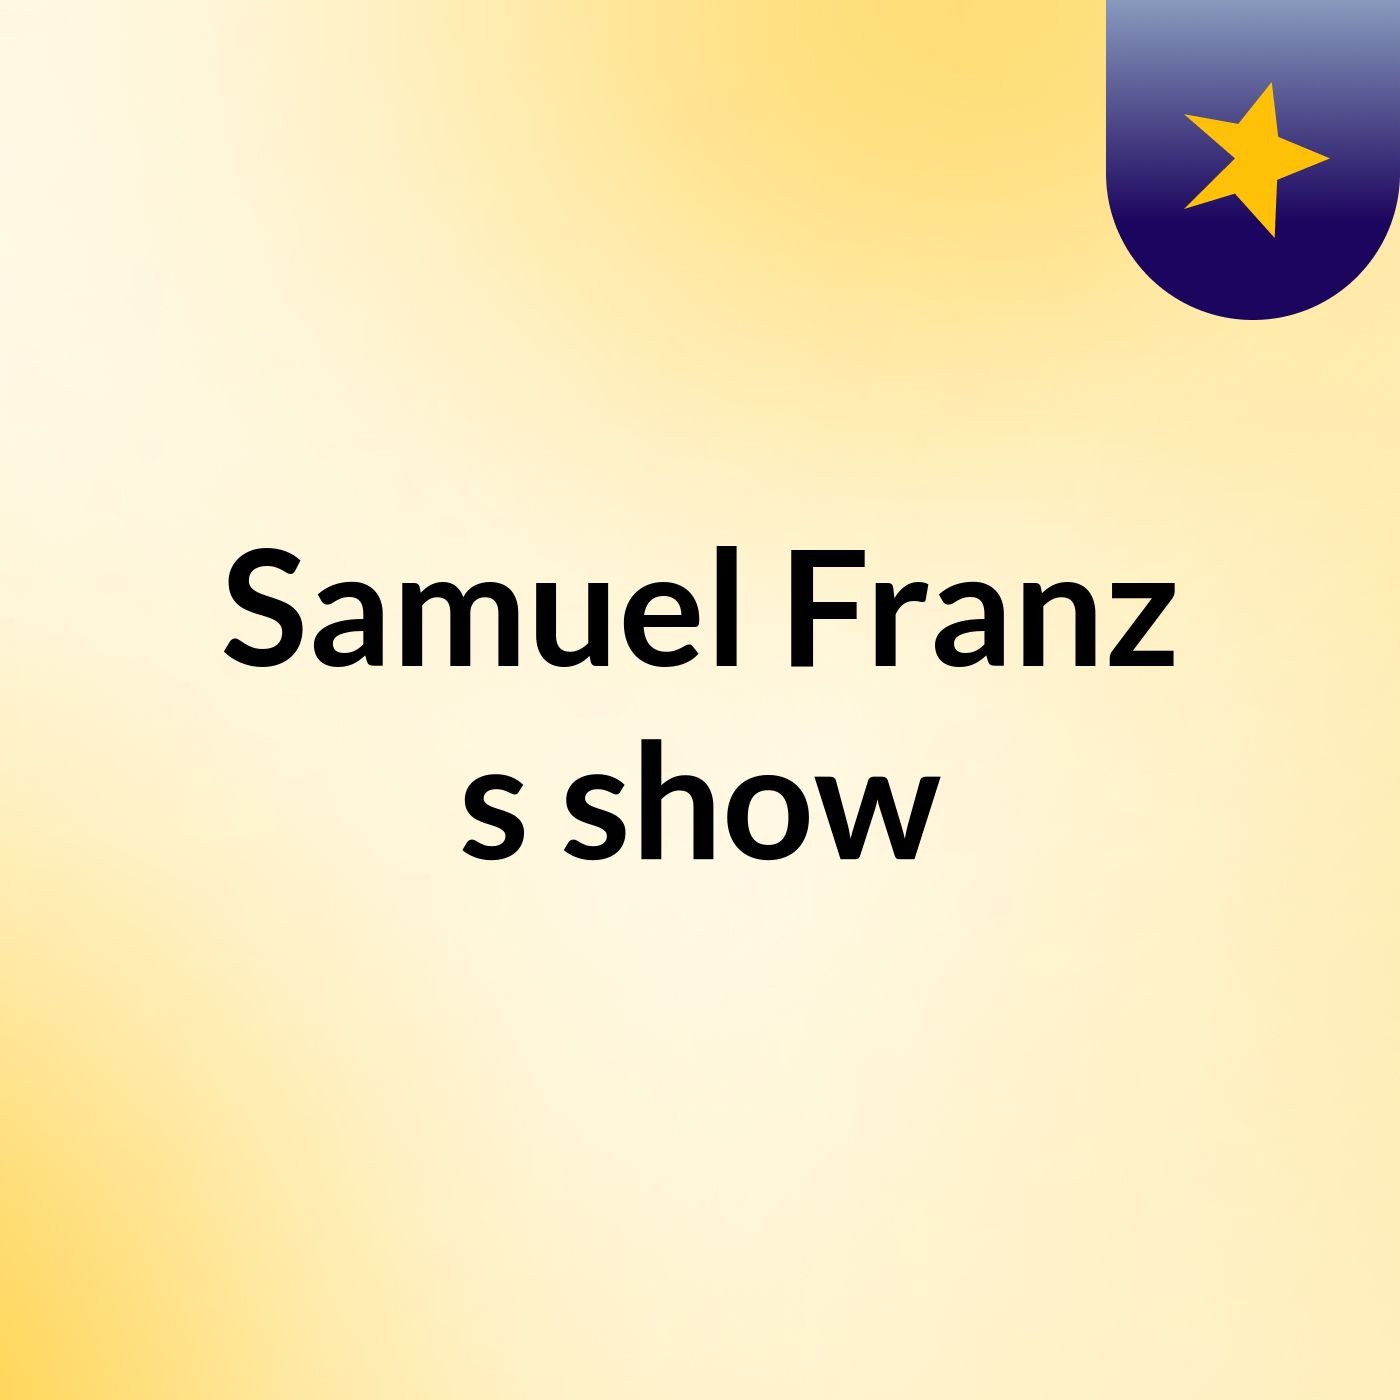 Samuel Franz's show